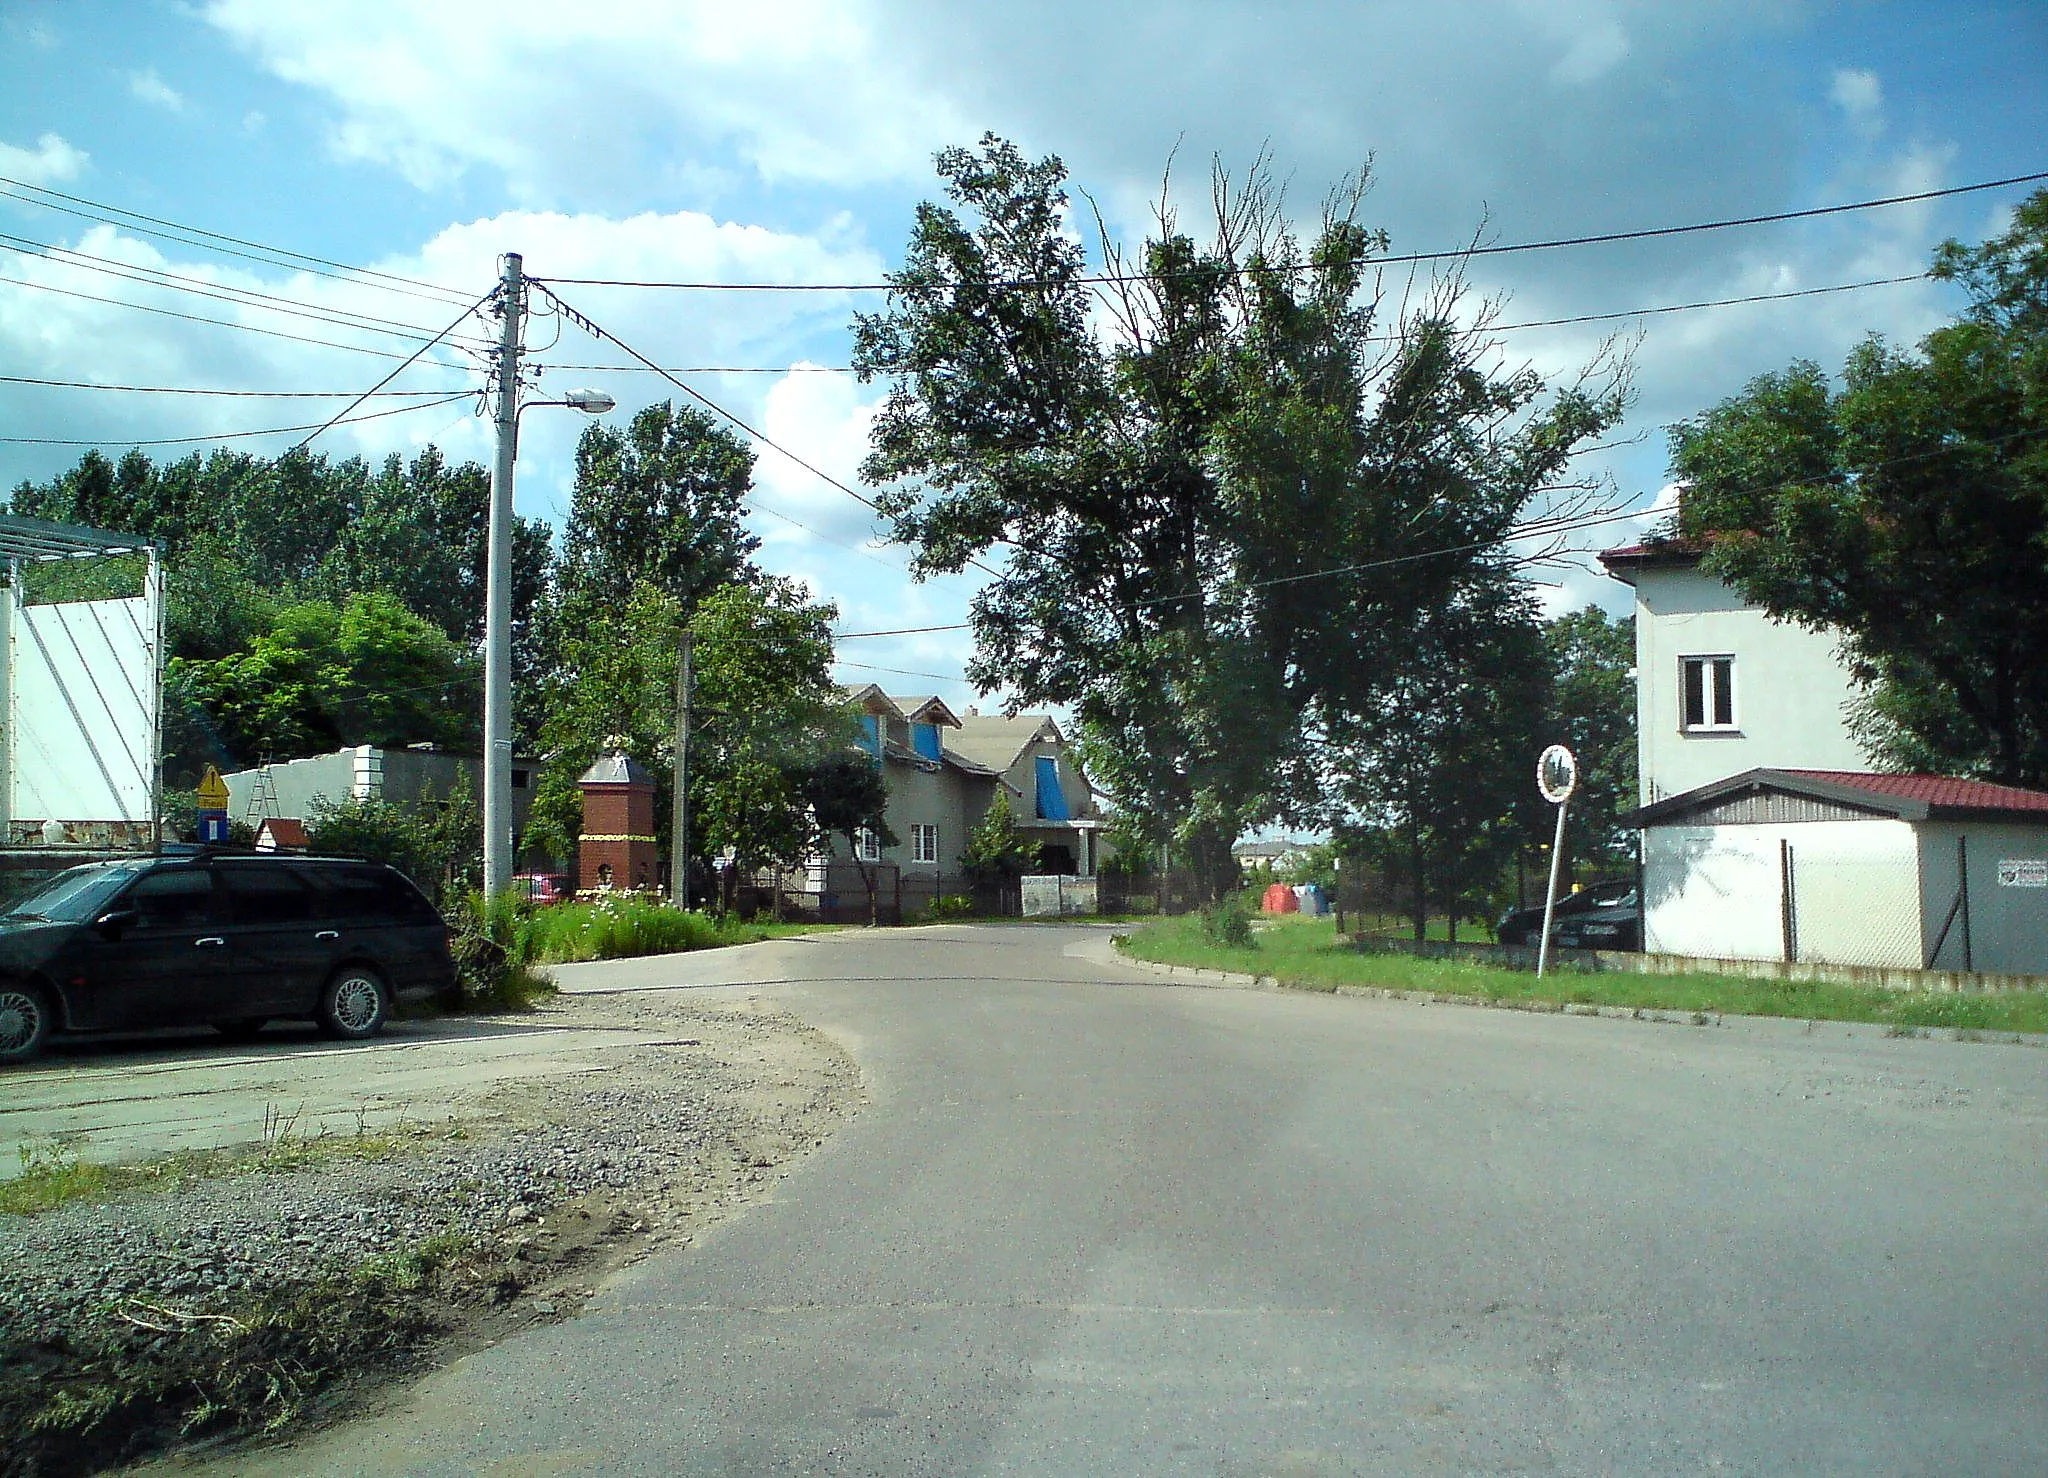 Photo showing: Macierzysz village near Warsaw